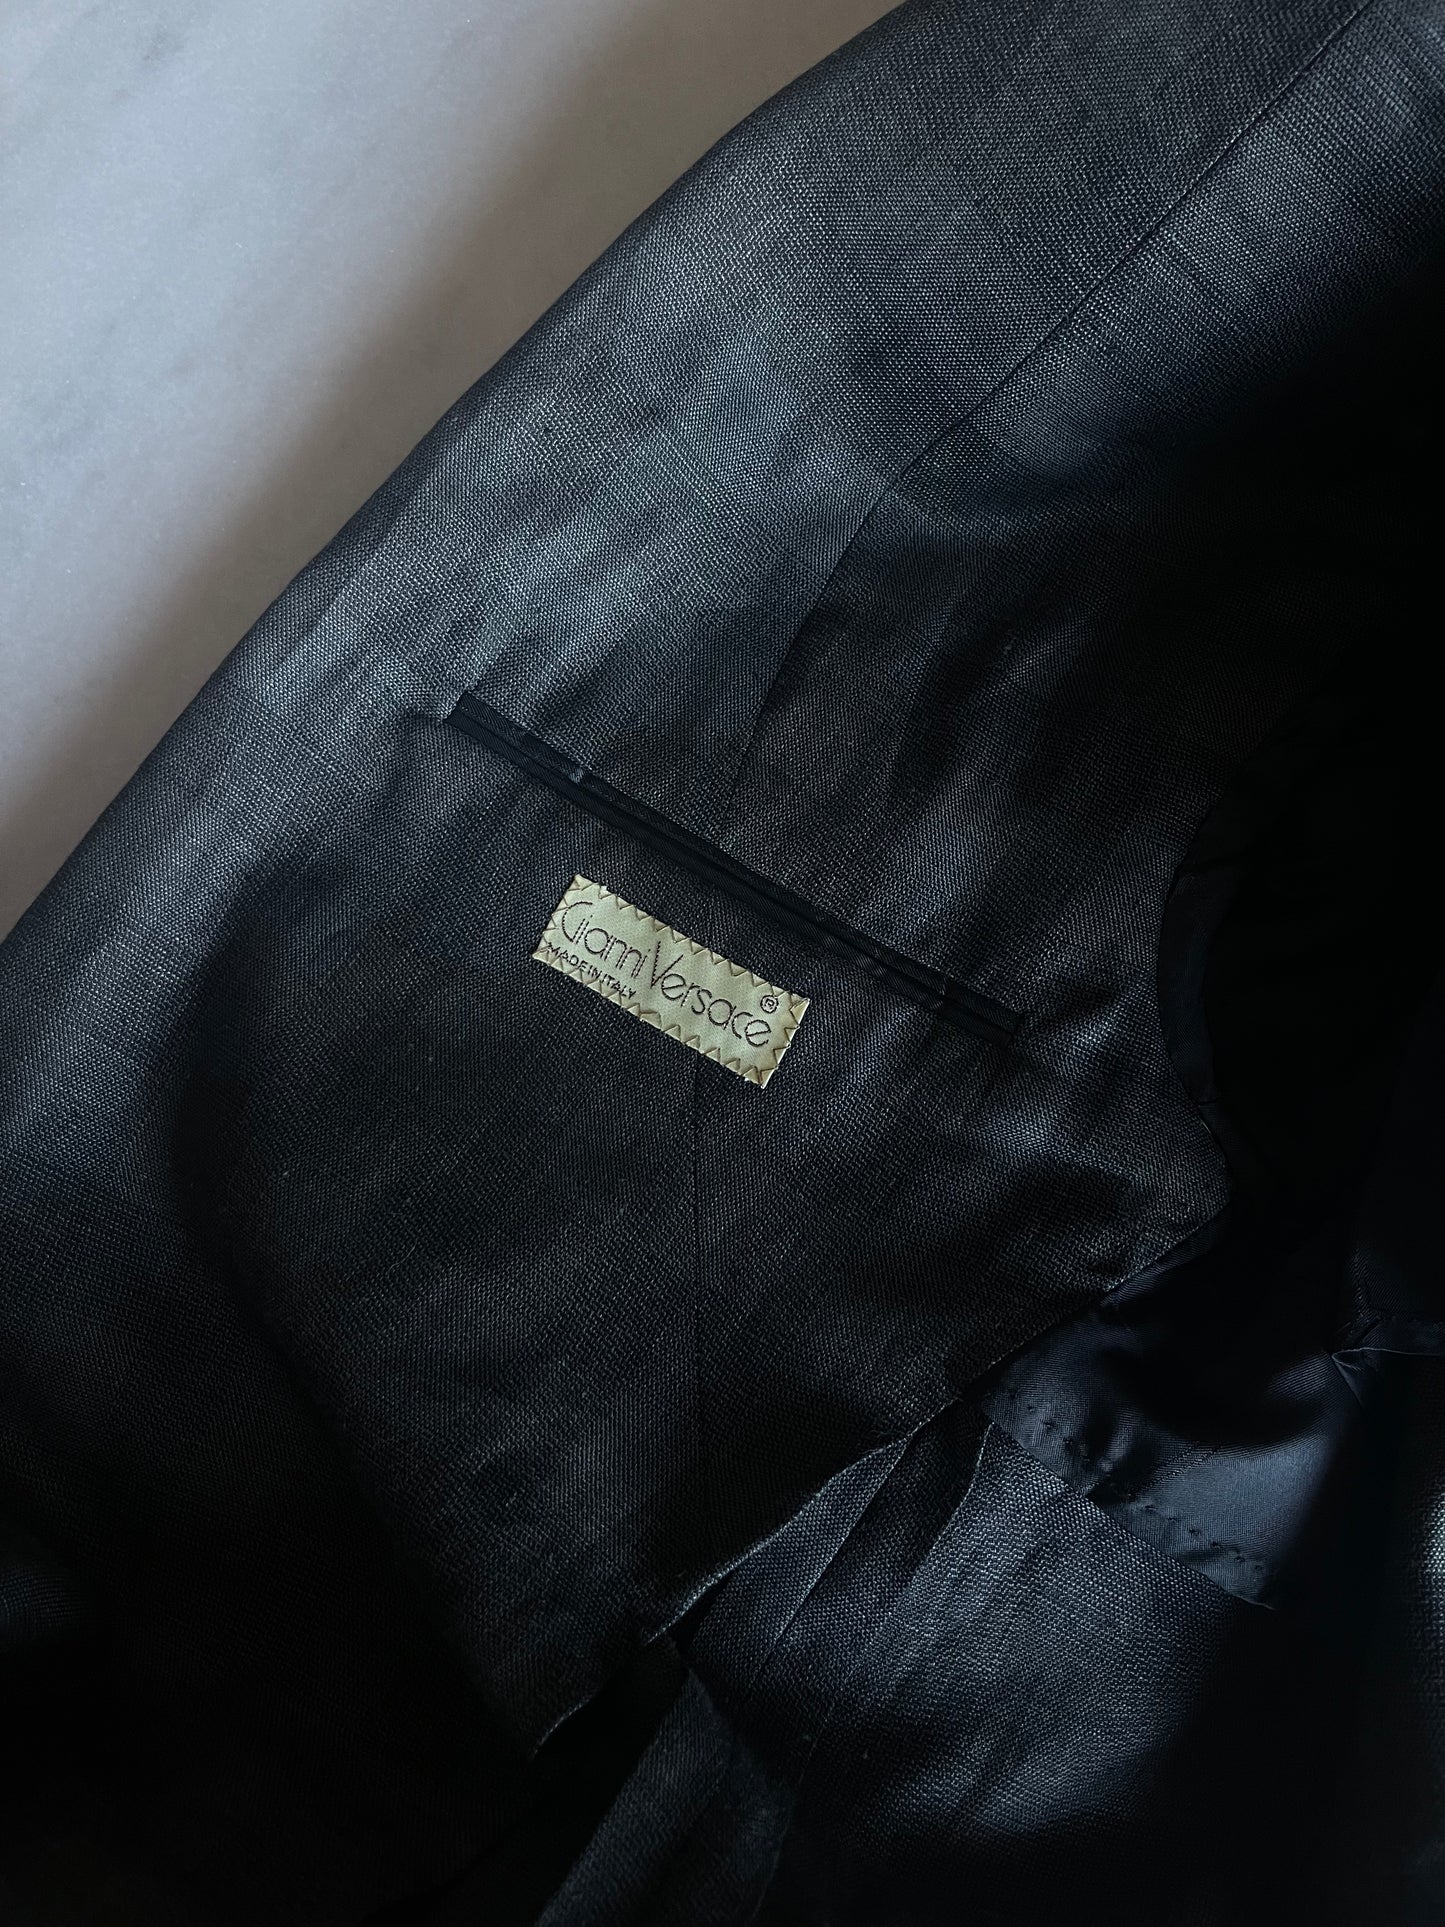 Gianni Versace precious linen suit